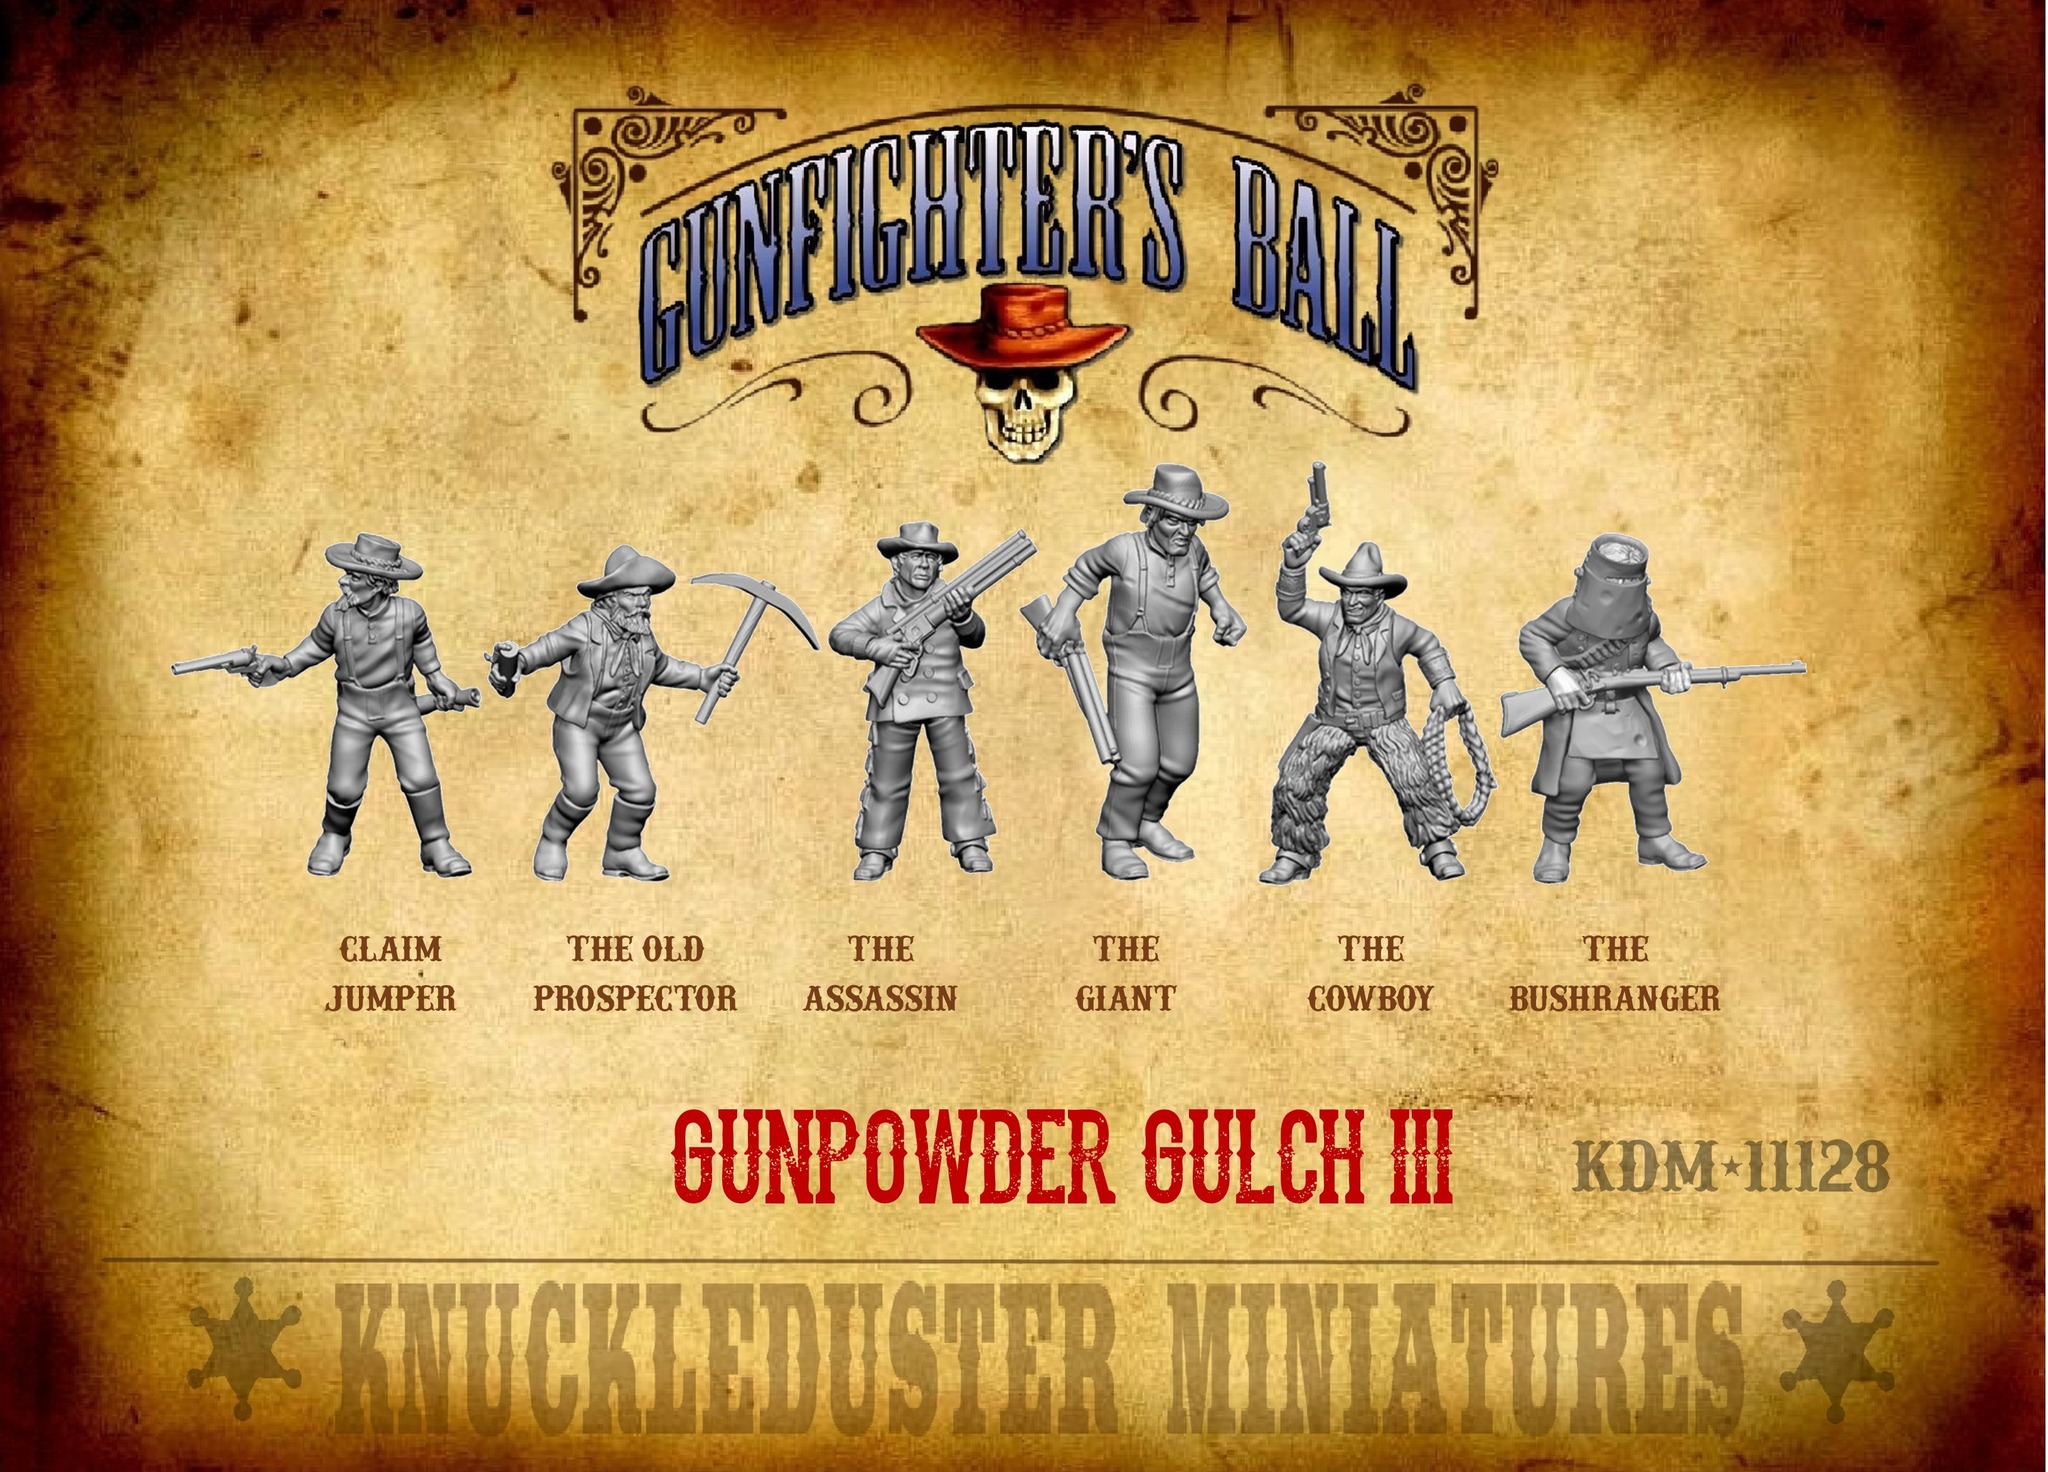 Gunpowder Gulch III - Knuckleduster Miniatures